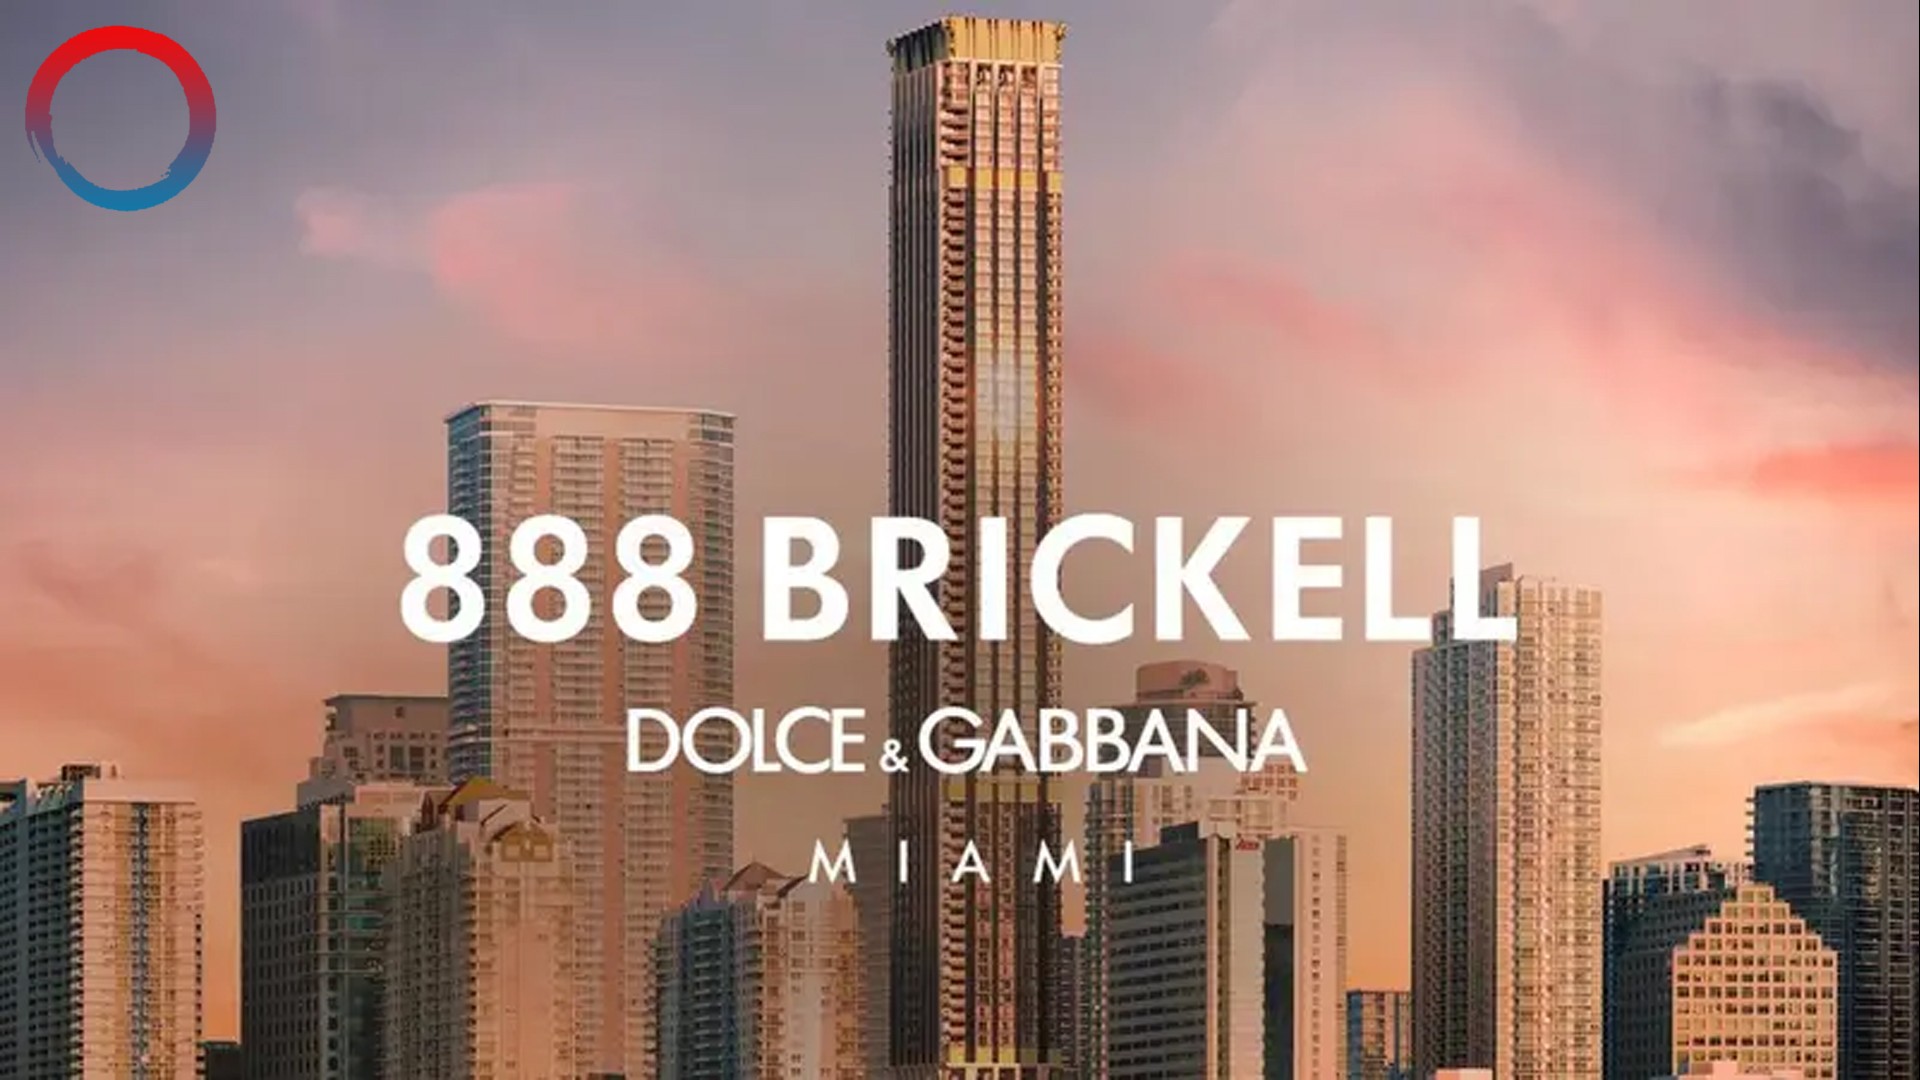 888 Brickell